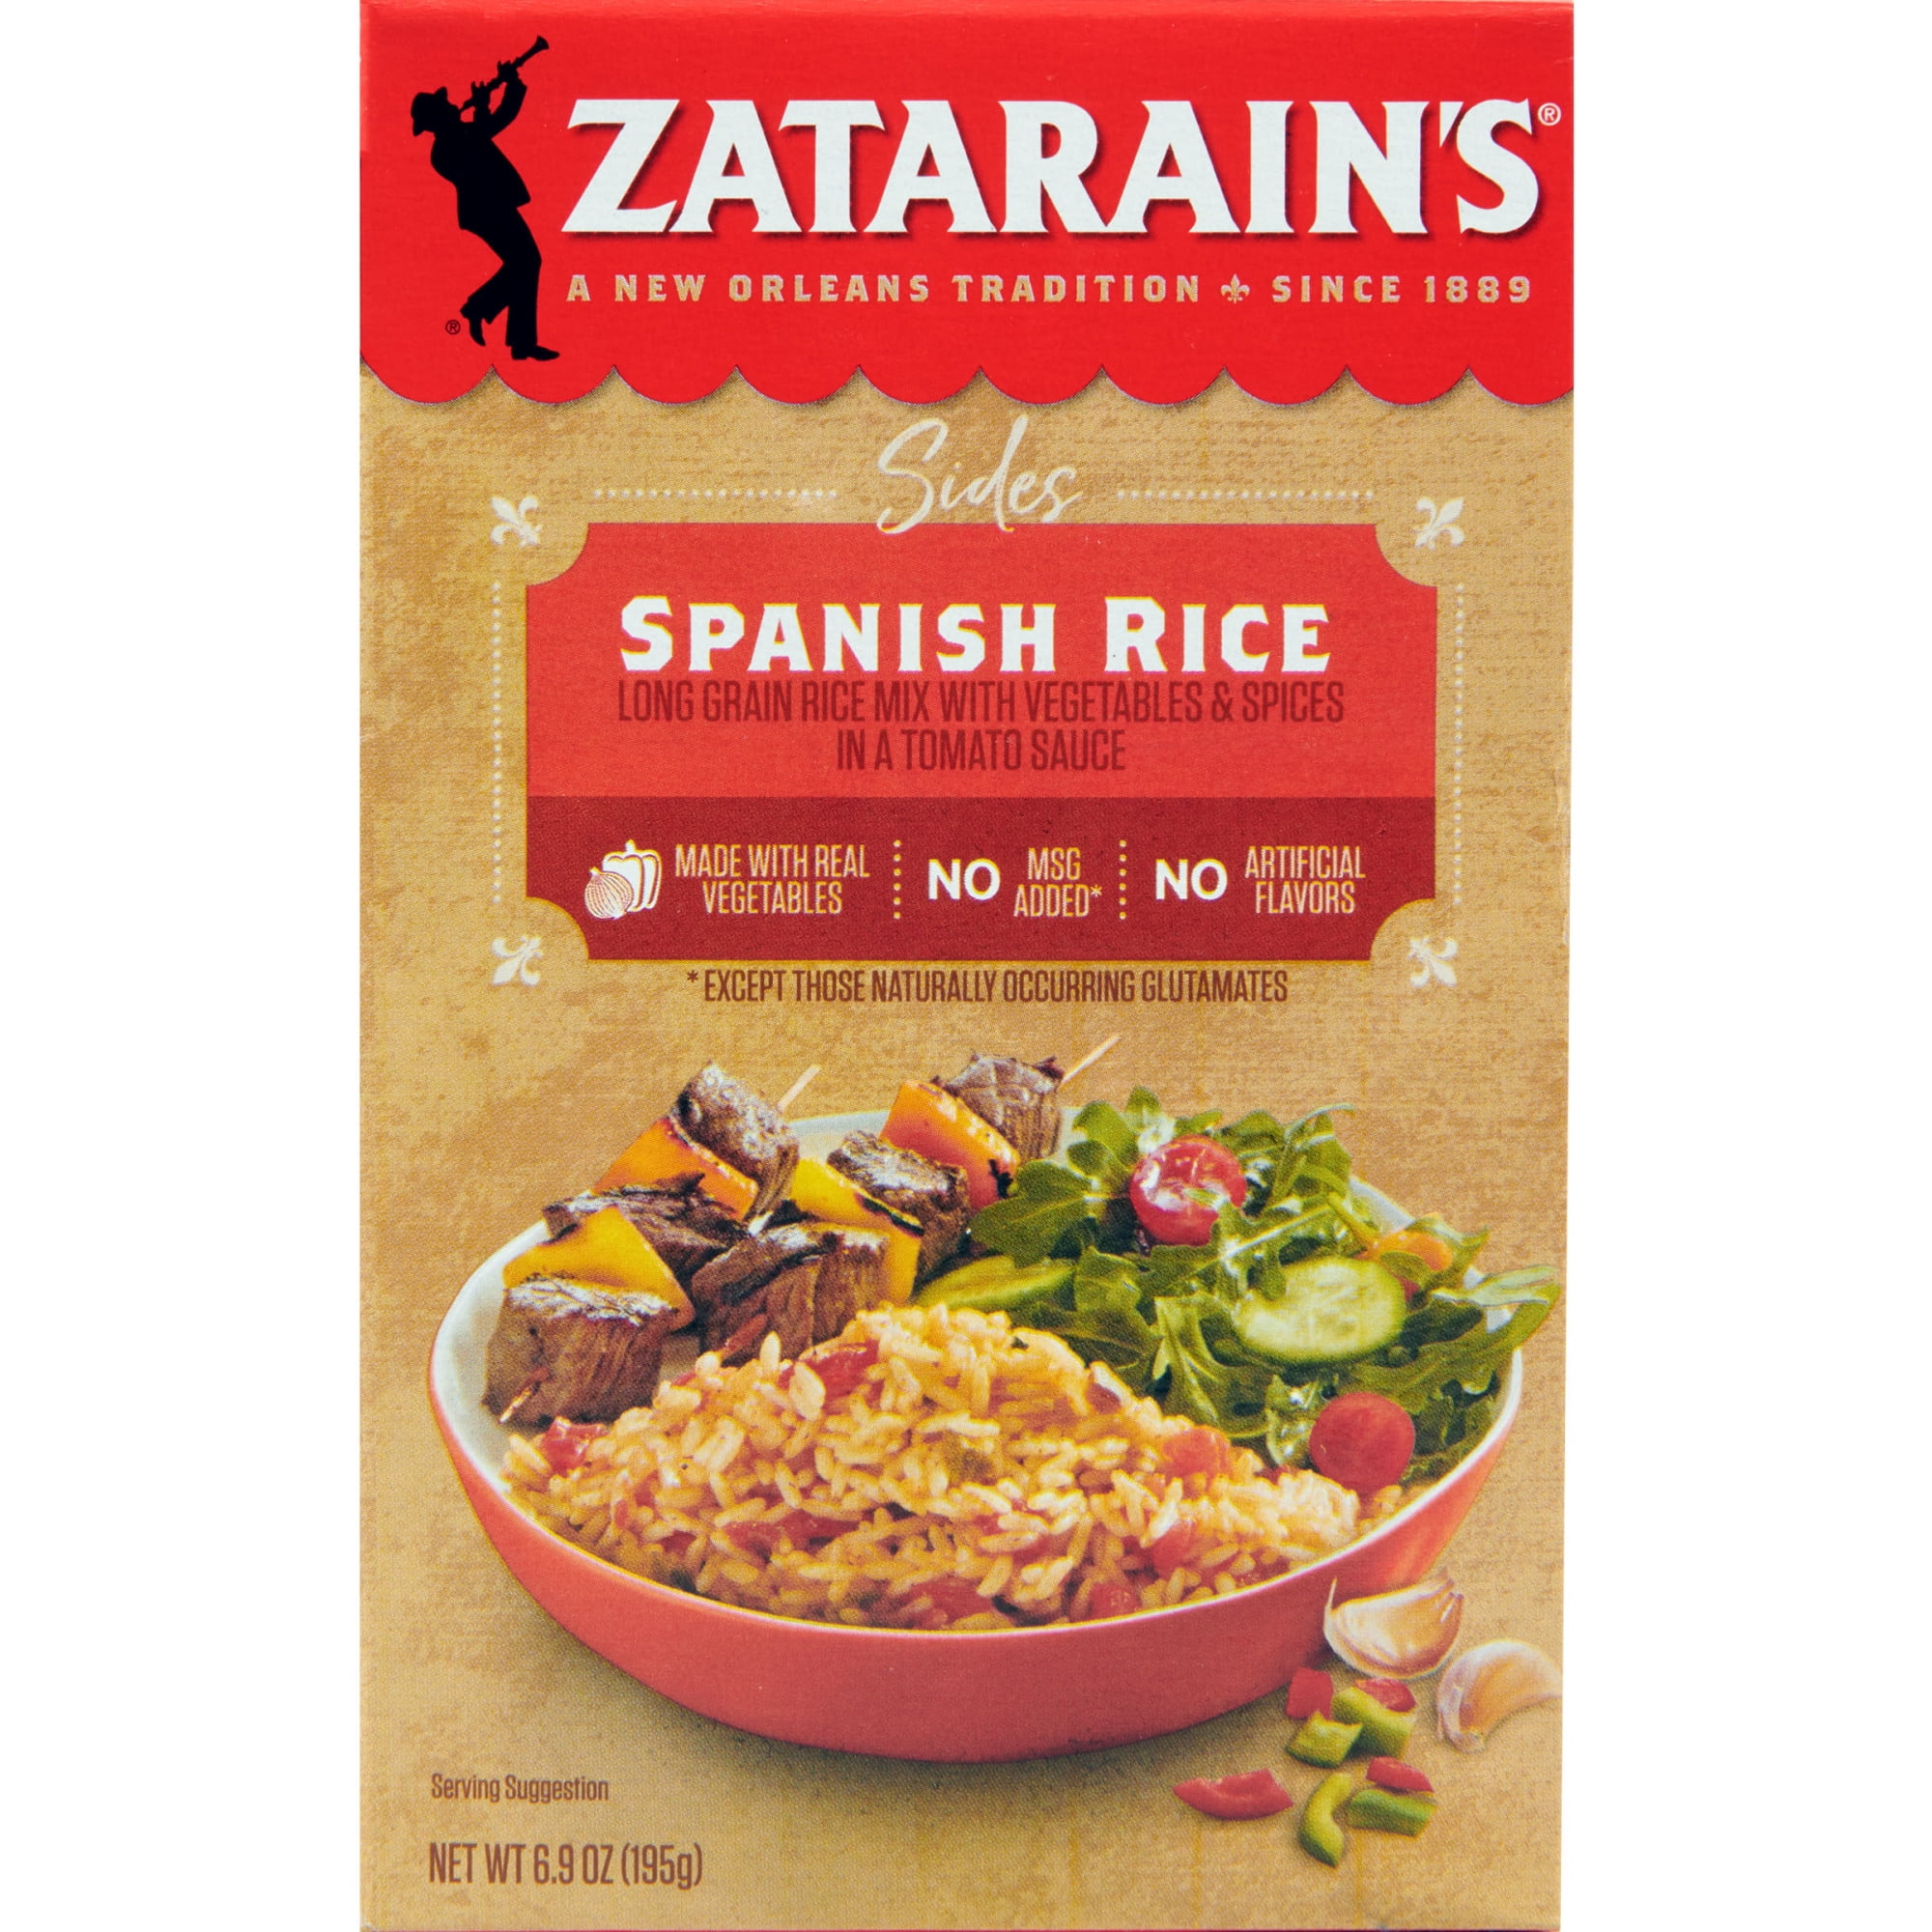 Zatarain's® Southern BBQ Rice Mix Side Dish 6 oz. Box